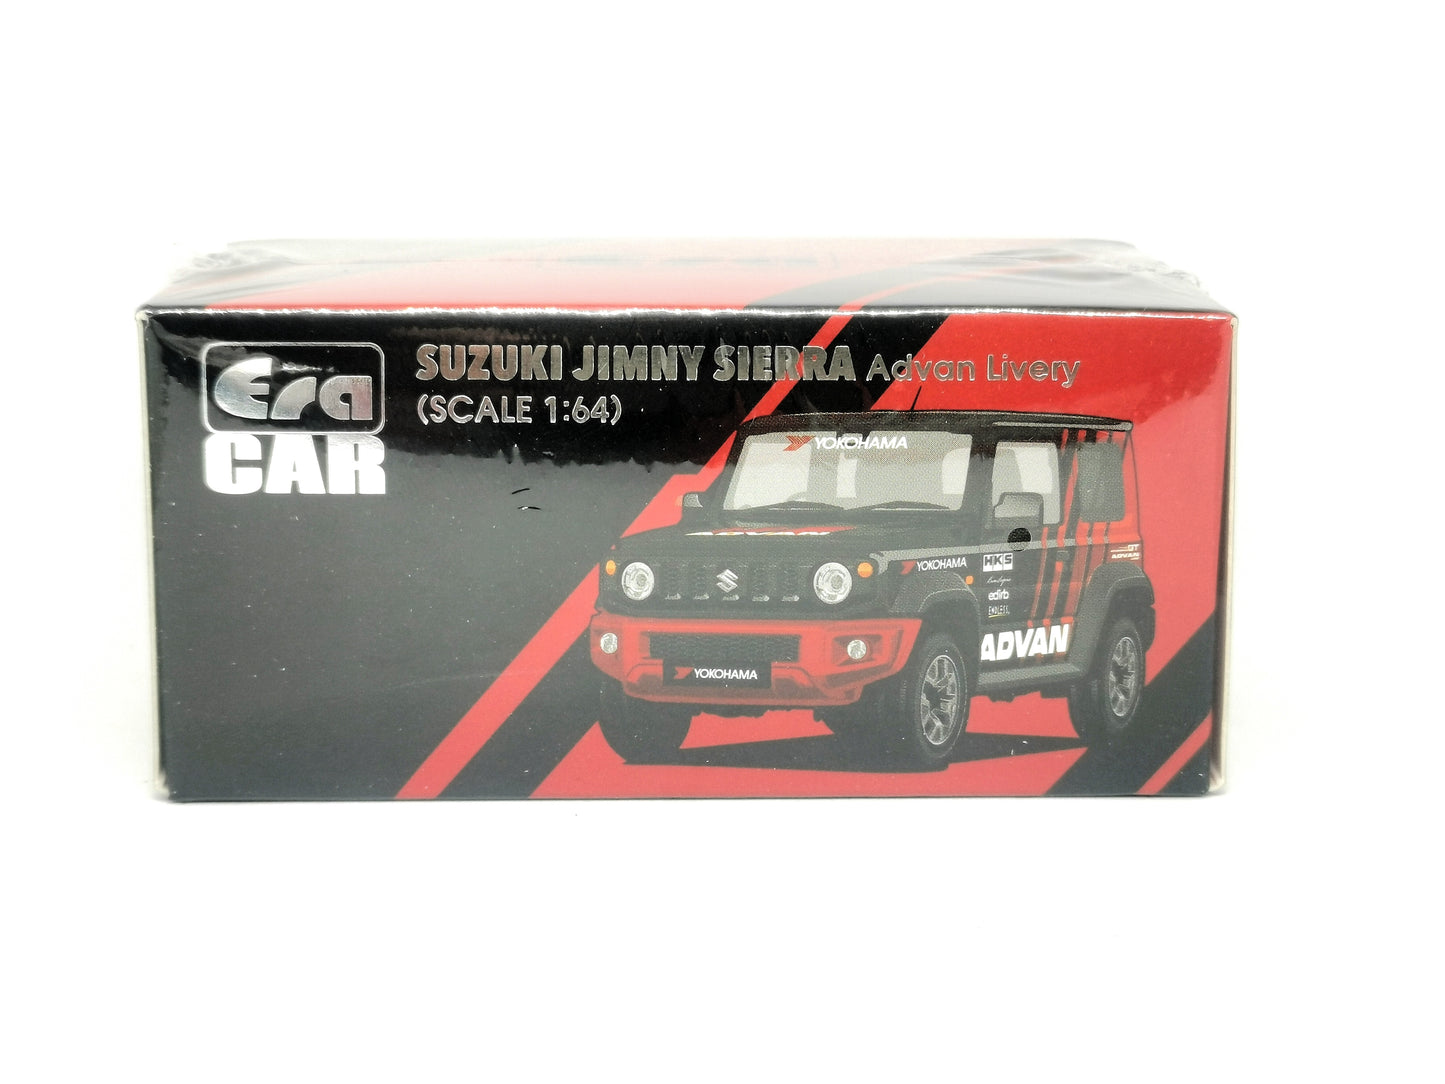 Era Car #SP Suzuki Advan Jimny Every Scale 1:64 Era Car